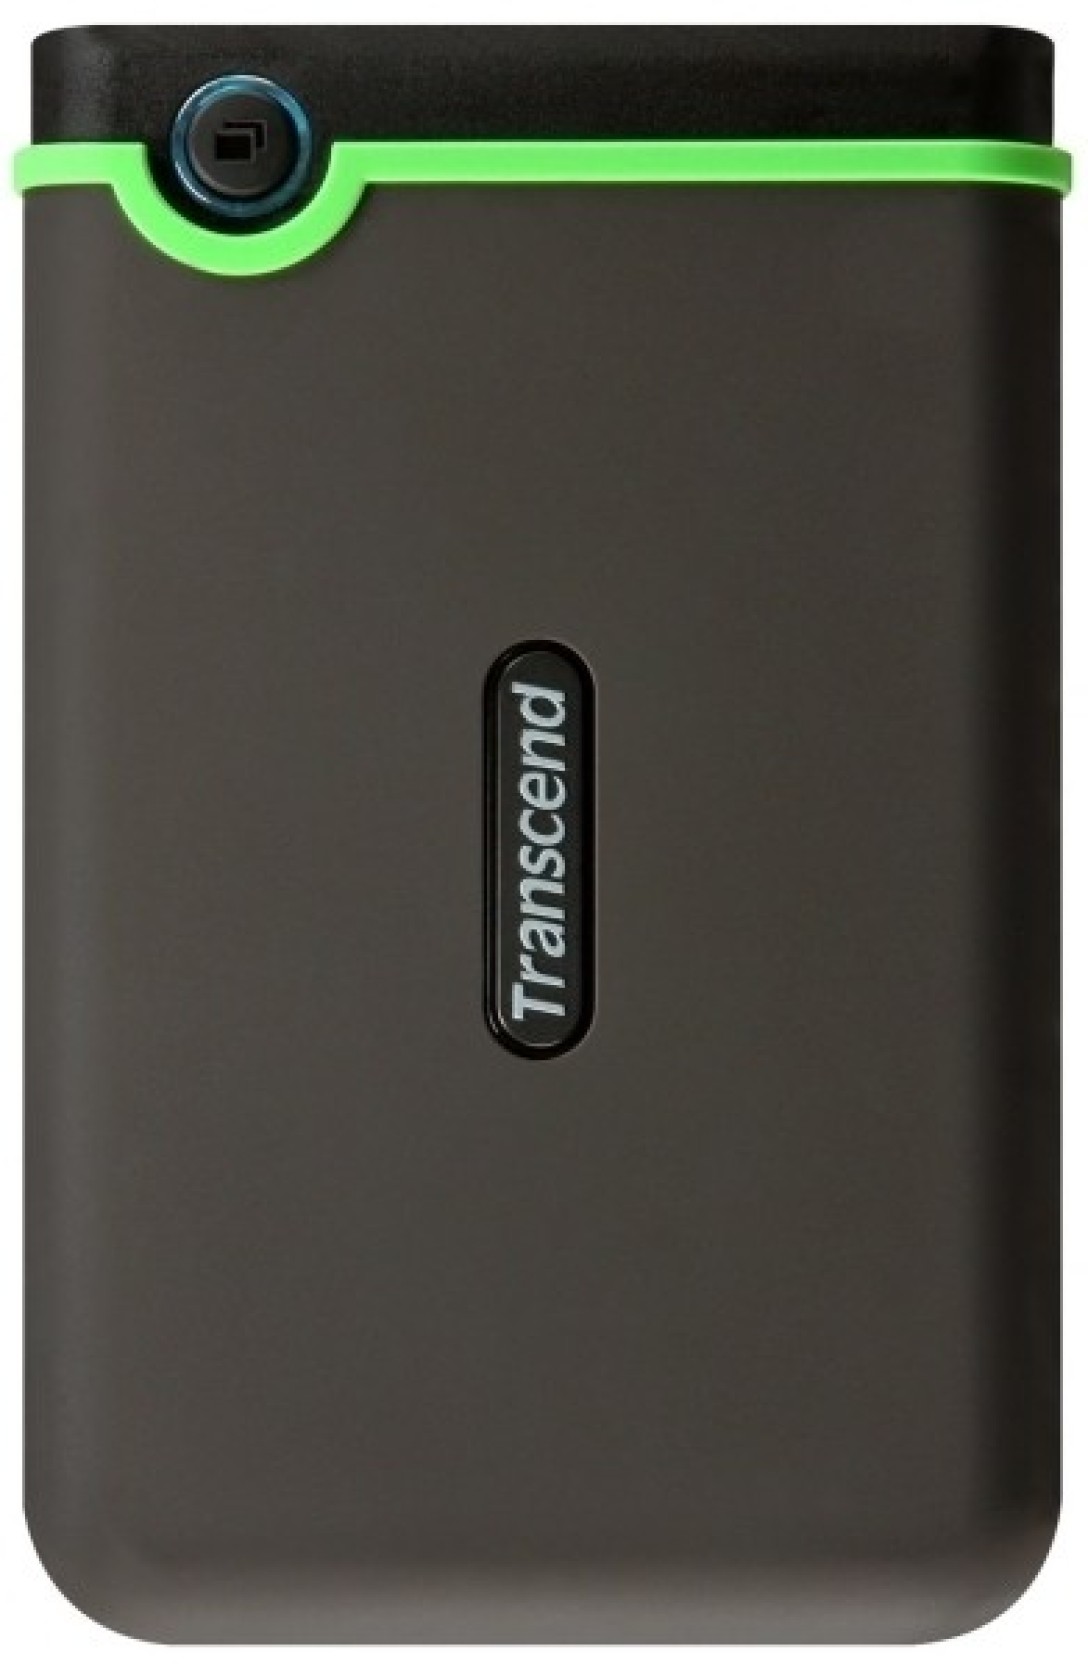 Transcend StoreJet 25M3 2.5 inch 1 TB External Hard Disk - Transcend